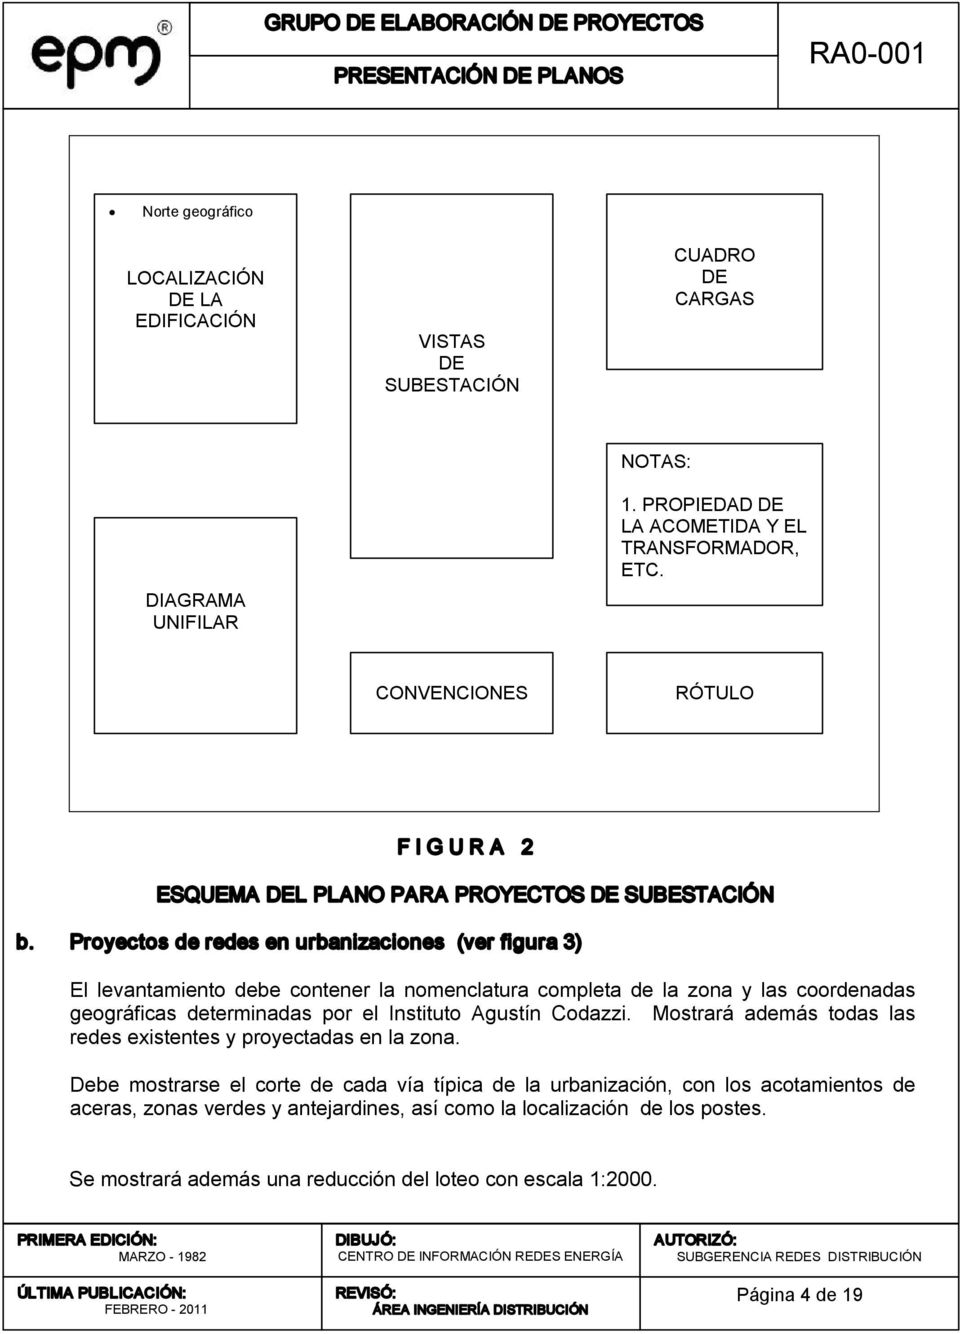 Proyectos de redes en urbanizaciones (ver figura 3) El levantamiento debe contener la nomenclatura completa de la zona y las coordenadas geográficas determinadas por el Instituto Agustín Codazzi.